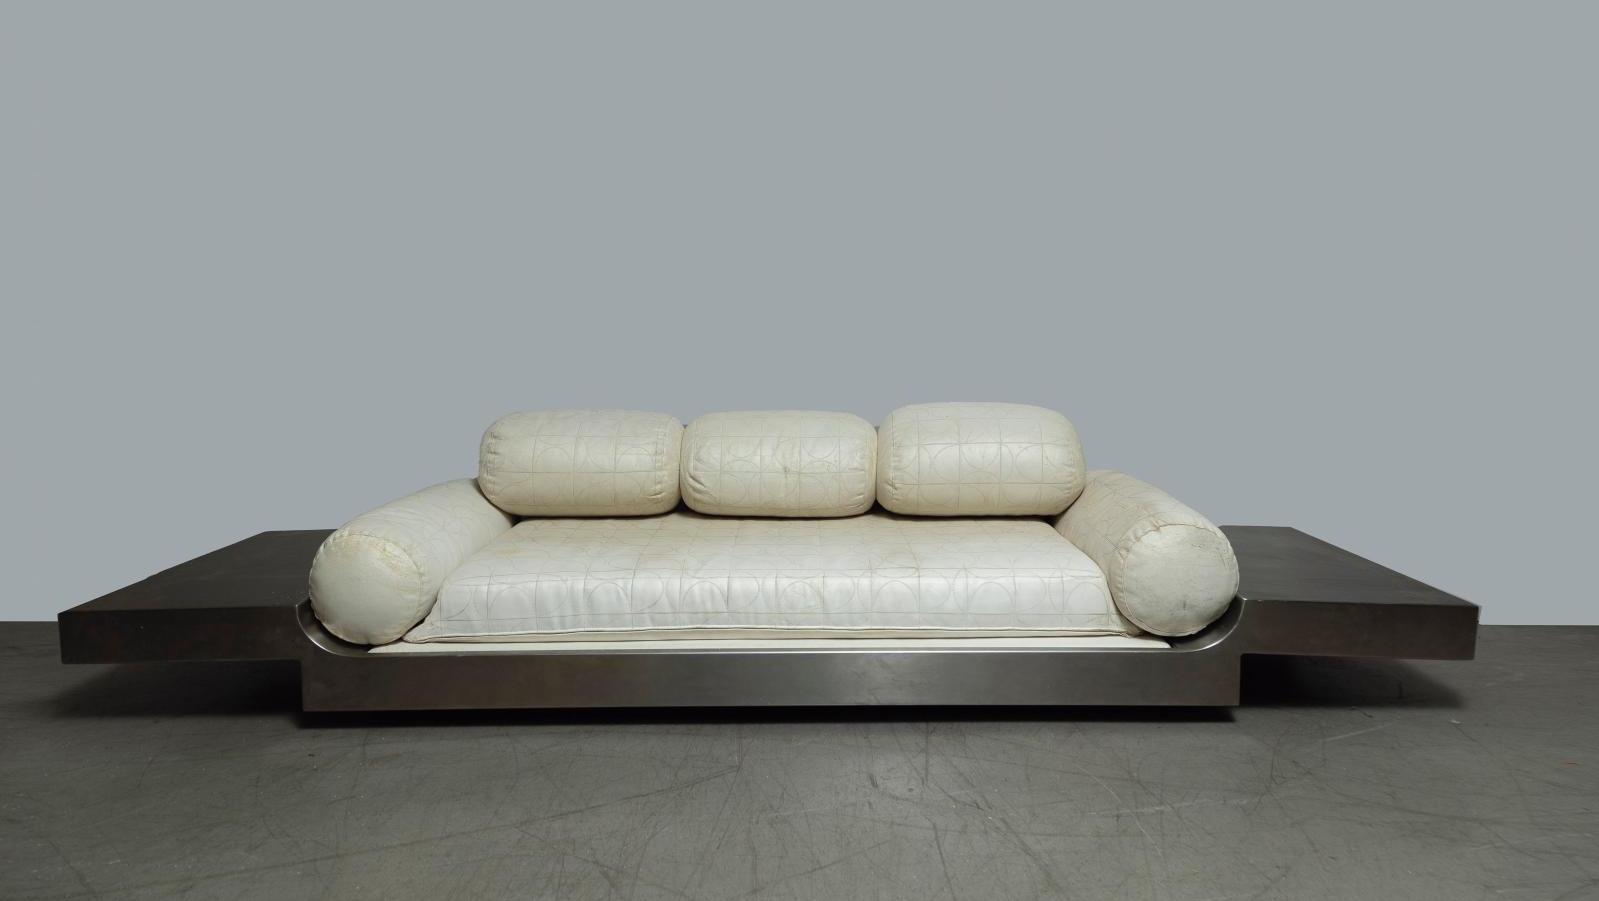 Maria Pergay (née en 1930), lit de repos en acier Inox brossé, modèle créé vers 1968... Un lit de repos revu et corrigé par le design